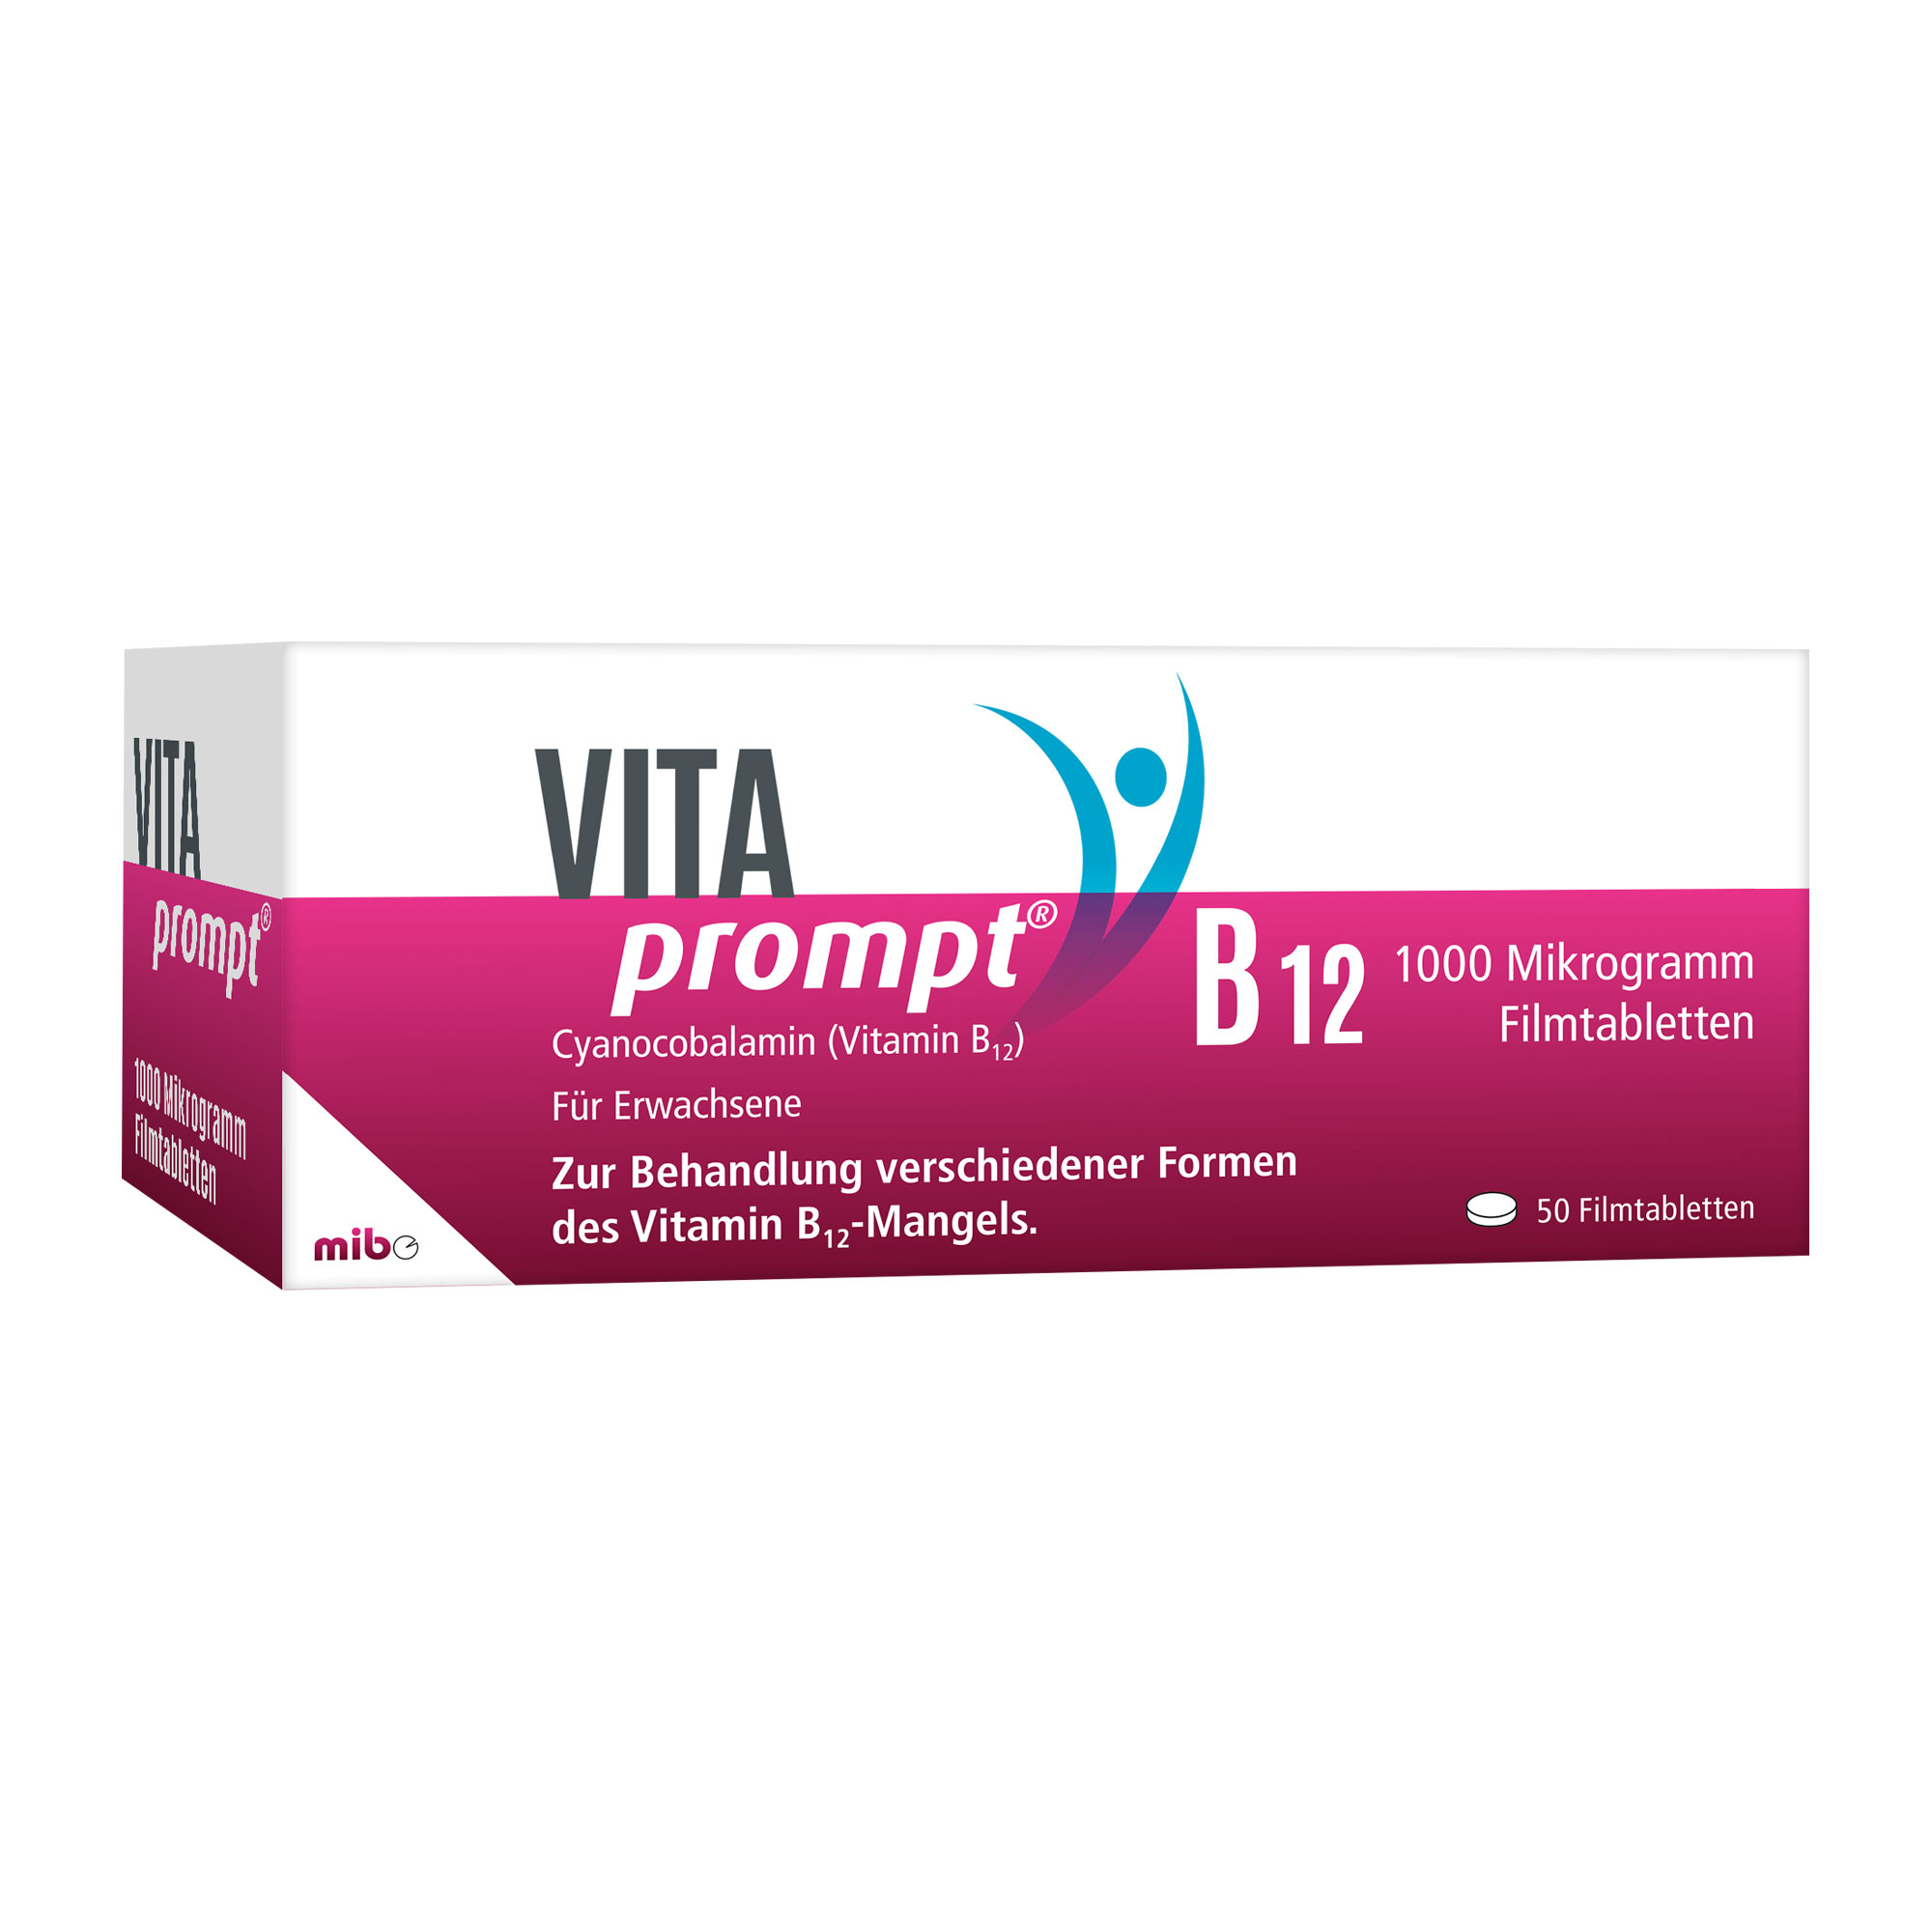 Hochdosiertes Vitamin B12 für Körper und Geist. Zur Anwendung bei Vitamin B12-Mangel.